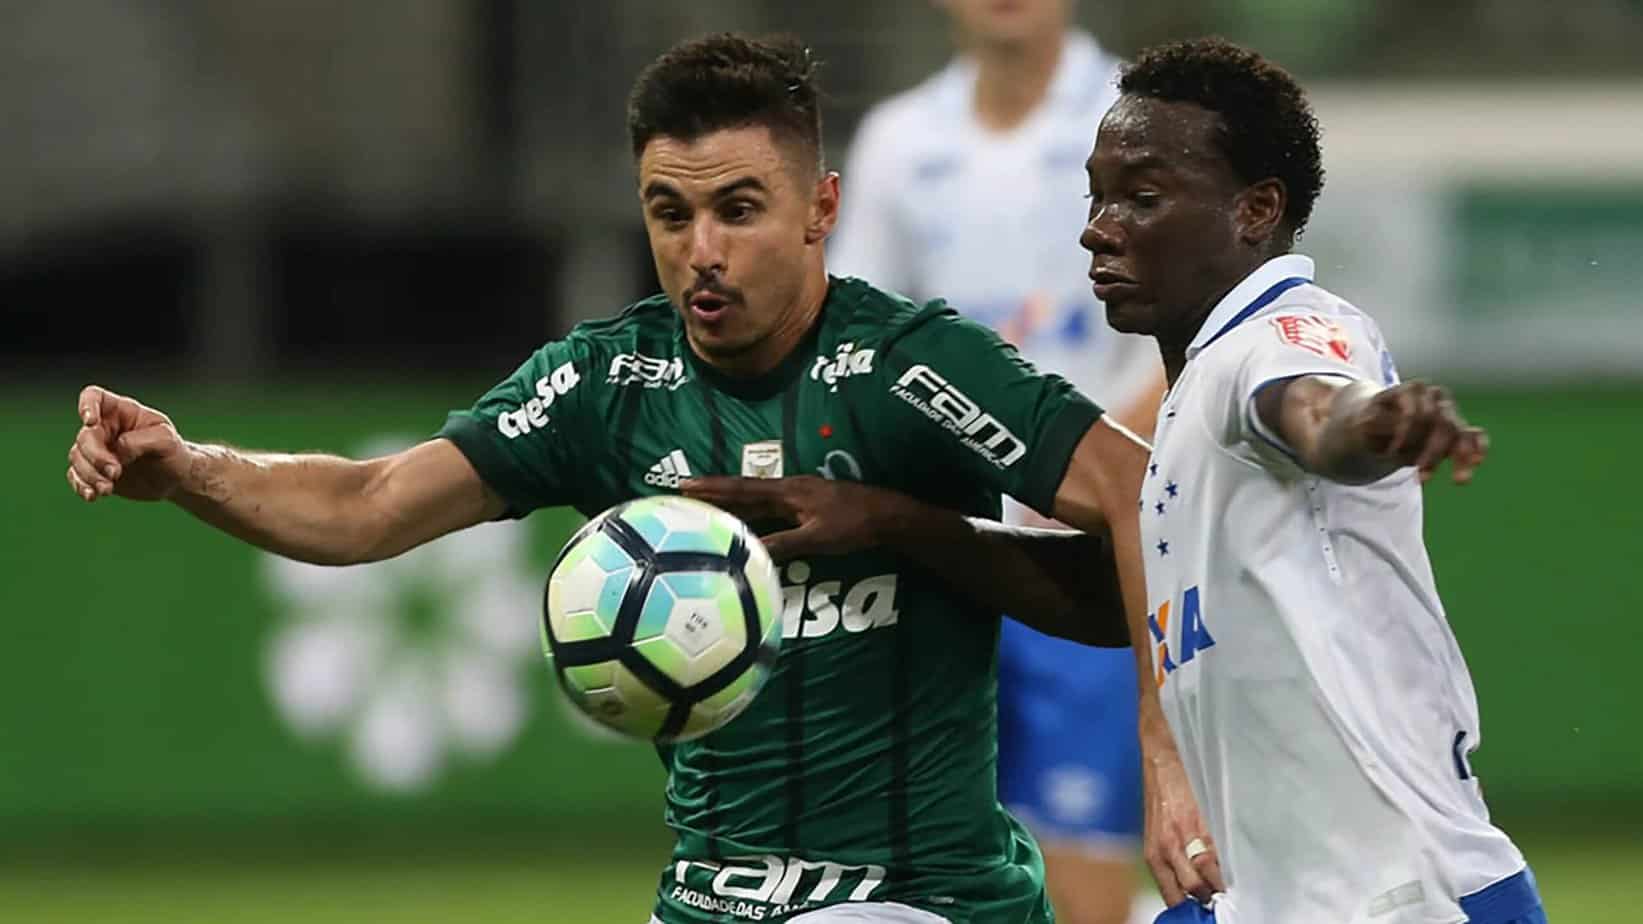 Palmeiras vs. Cruzeiro Betting Odds and Preview